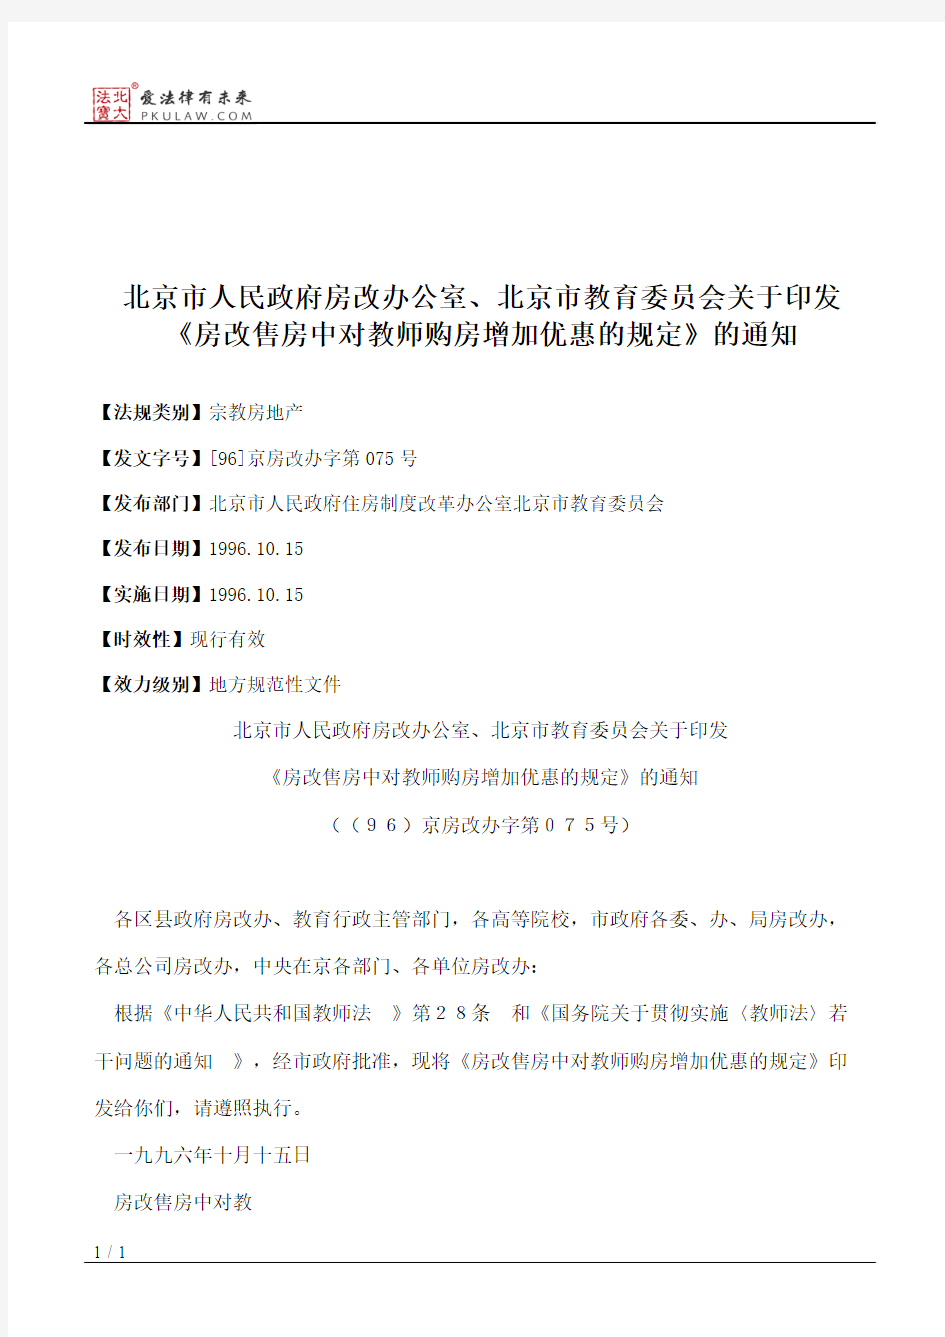 北京市人民政府房改办公室、北京市教育委员会关于印发《房改售房